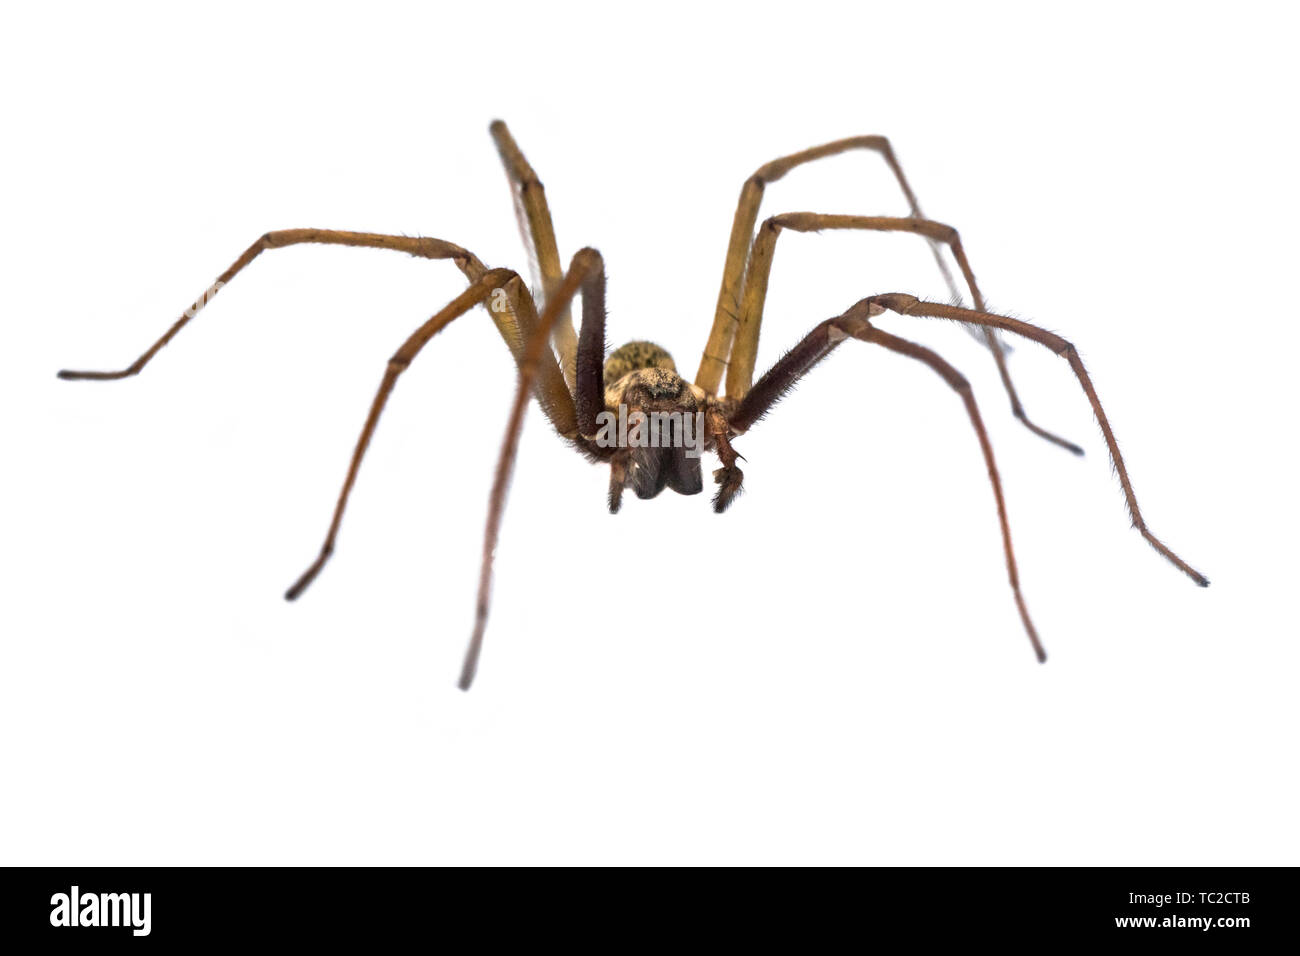 Casa gigante araña (Eratigena atrica) Vista frontal de araña con largas piernas peludas aislado sobre fondo blanco. Foto de stock